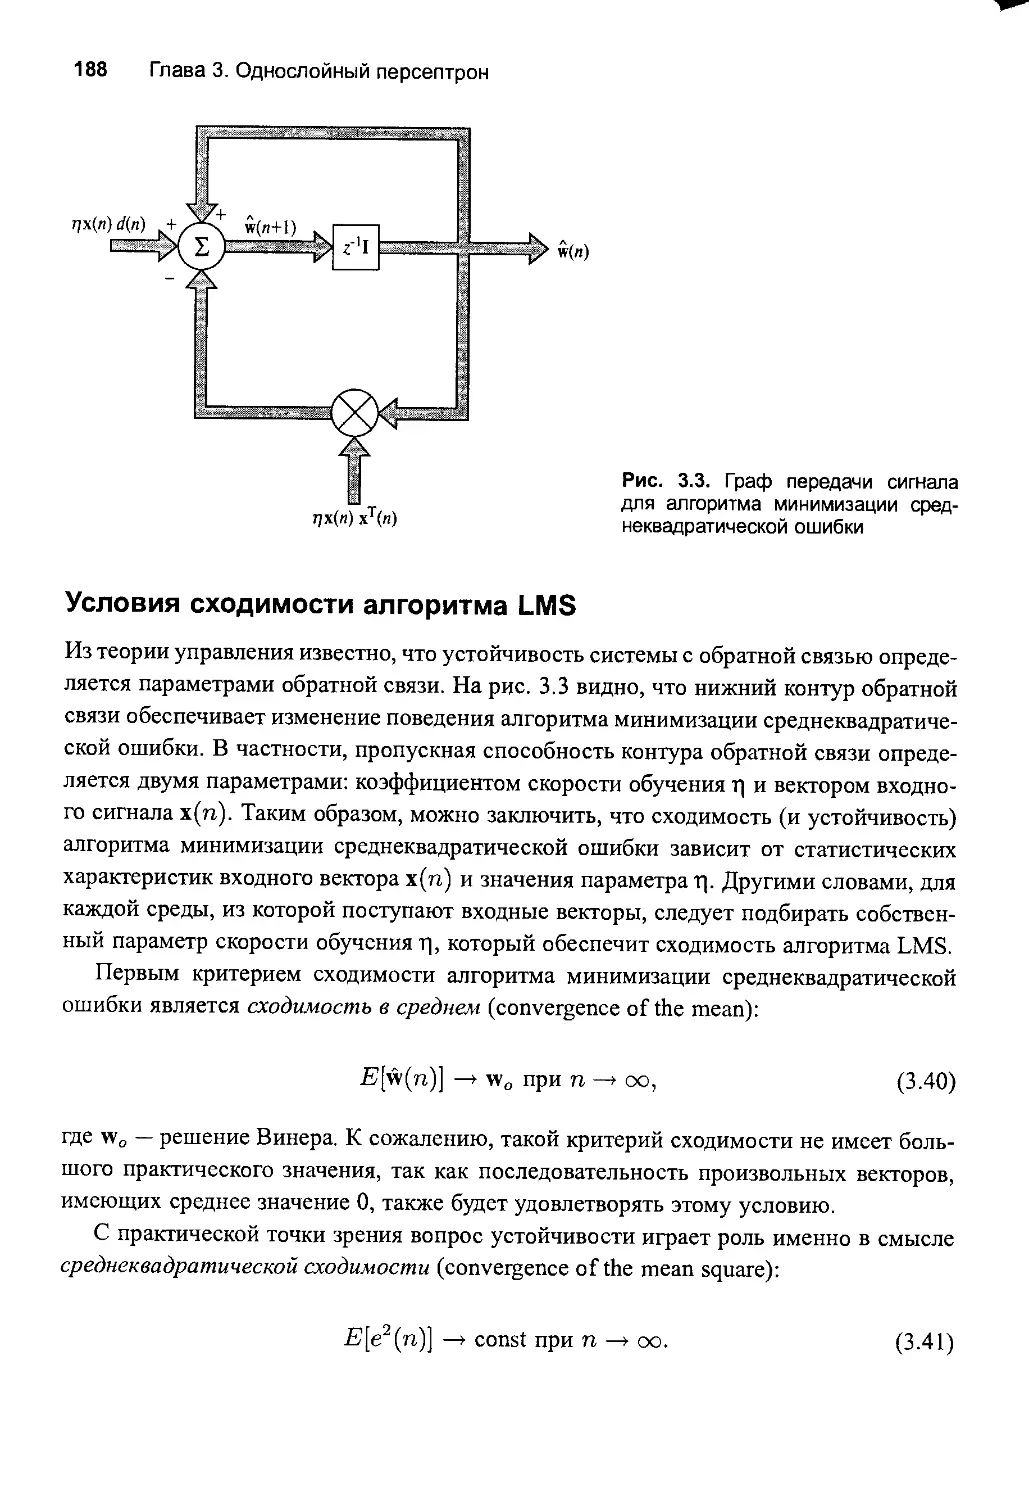 Условия сходимости алroритма LMS